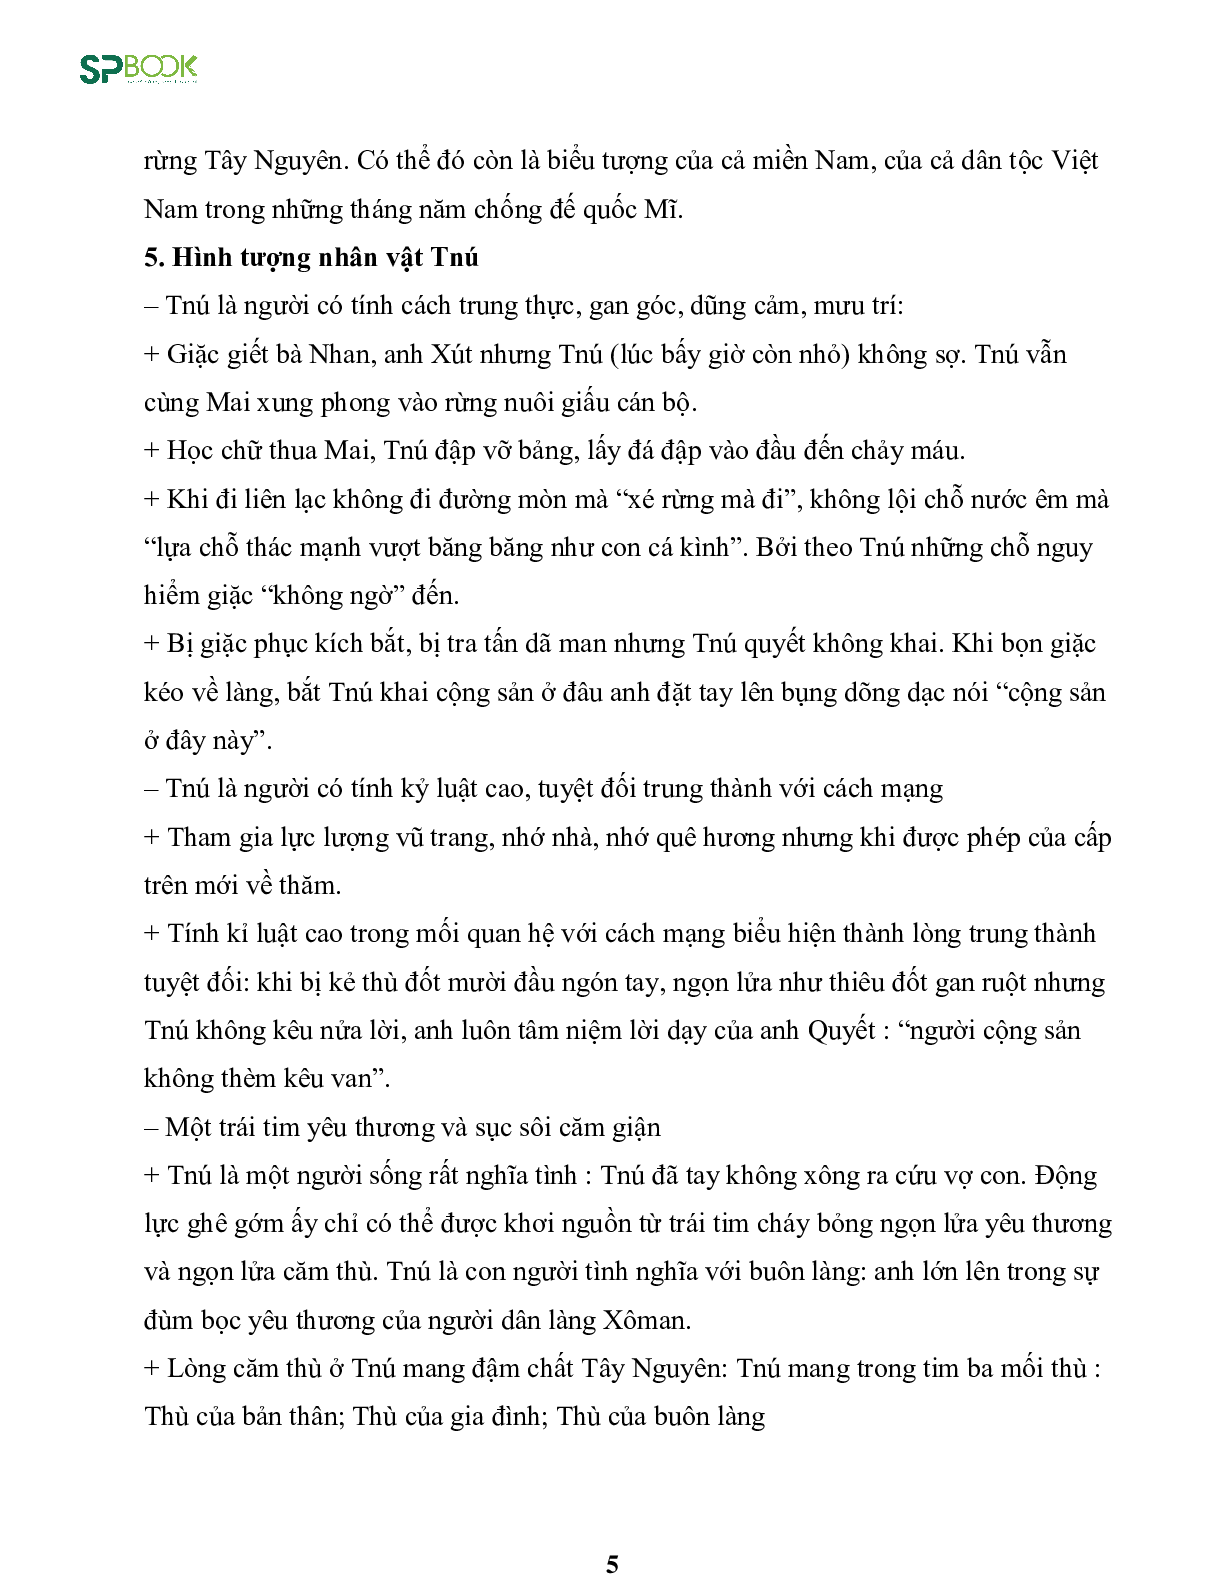 Kiến thức cơ bản và những dạng đề thi về bài Rừng xà nu - Nguyễn Trung Thành Ngữ văn 12 (trang 5)